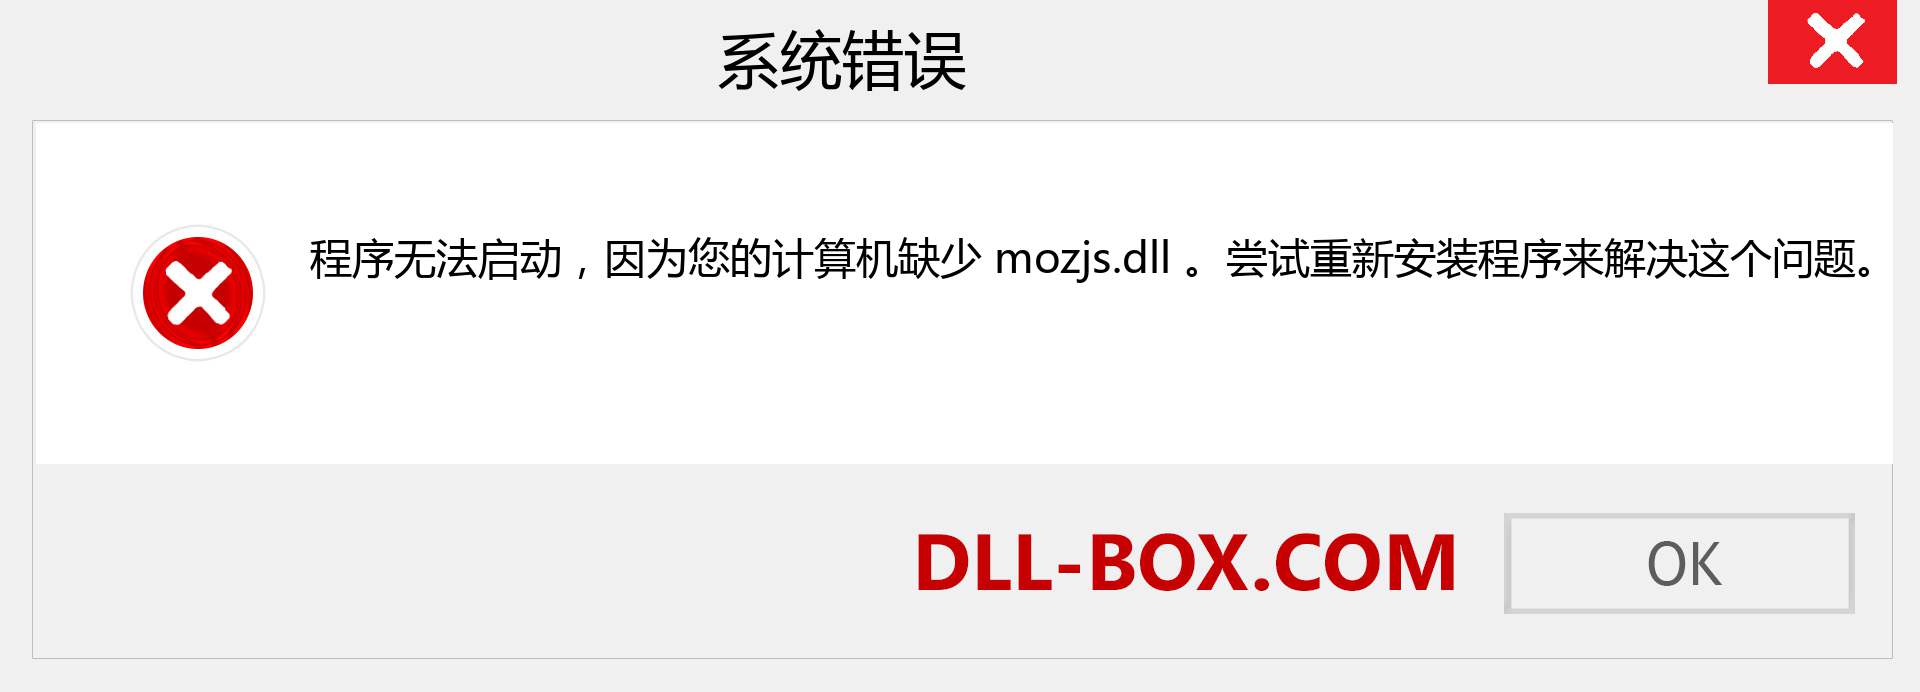 mozjs.dll 文件丢失？。 适用于 Windows 7、8、10 的下载 - 修复 Windows、照片、图像上的 mozjs dll 丢失错误